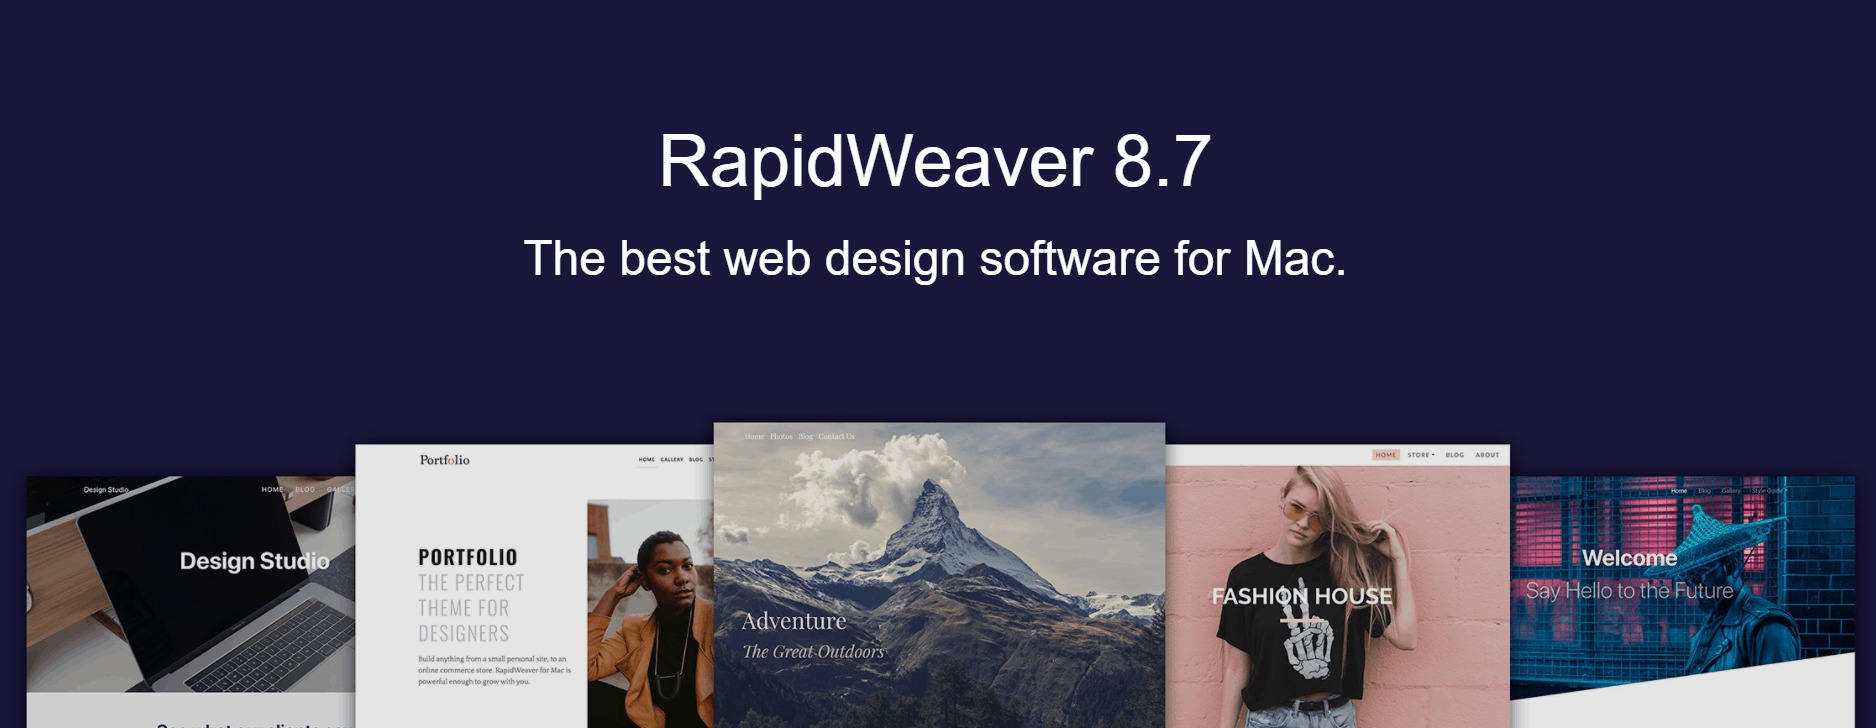 Website Editor - RapidWeaver